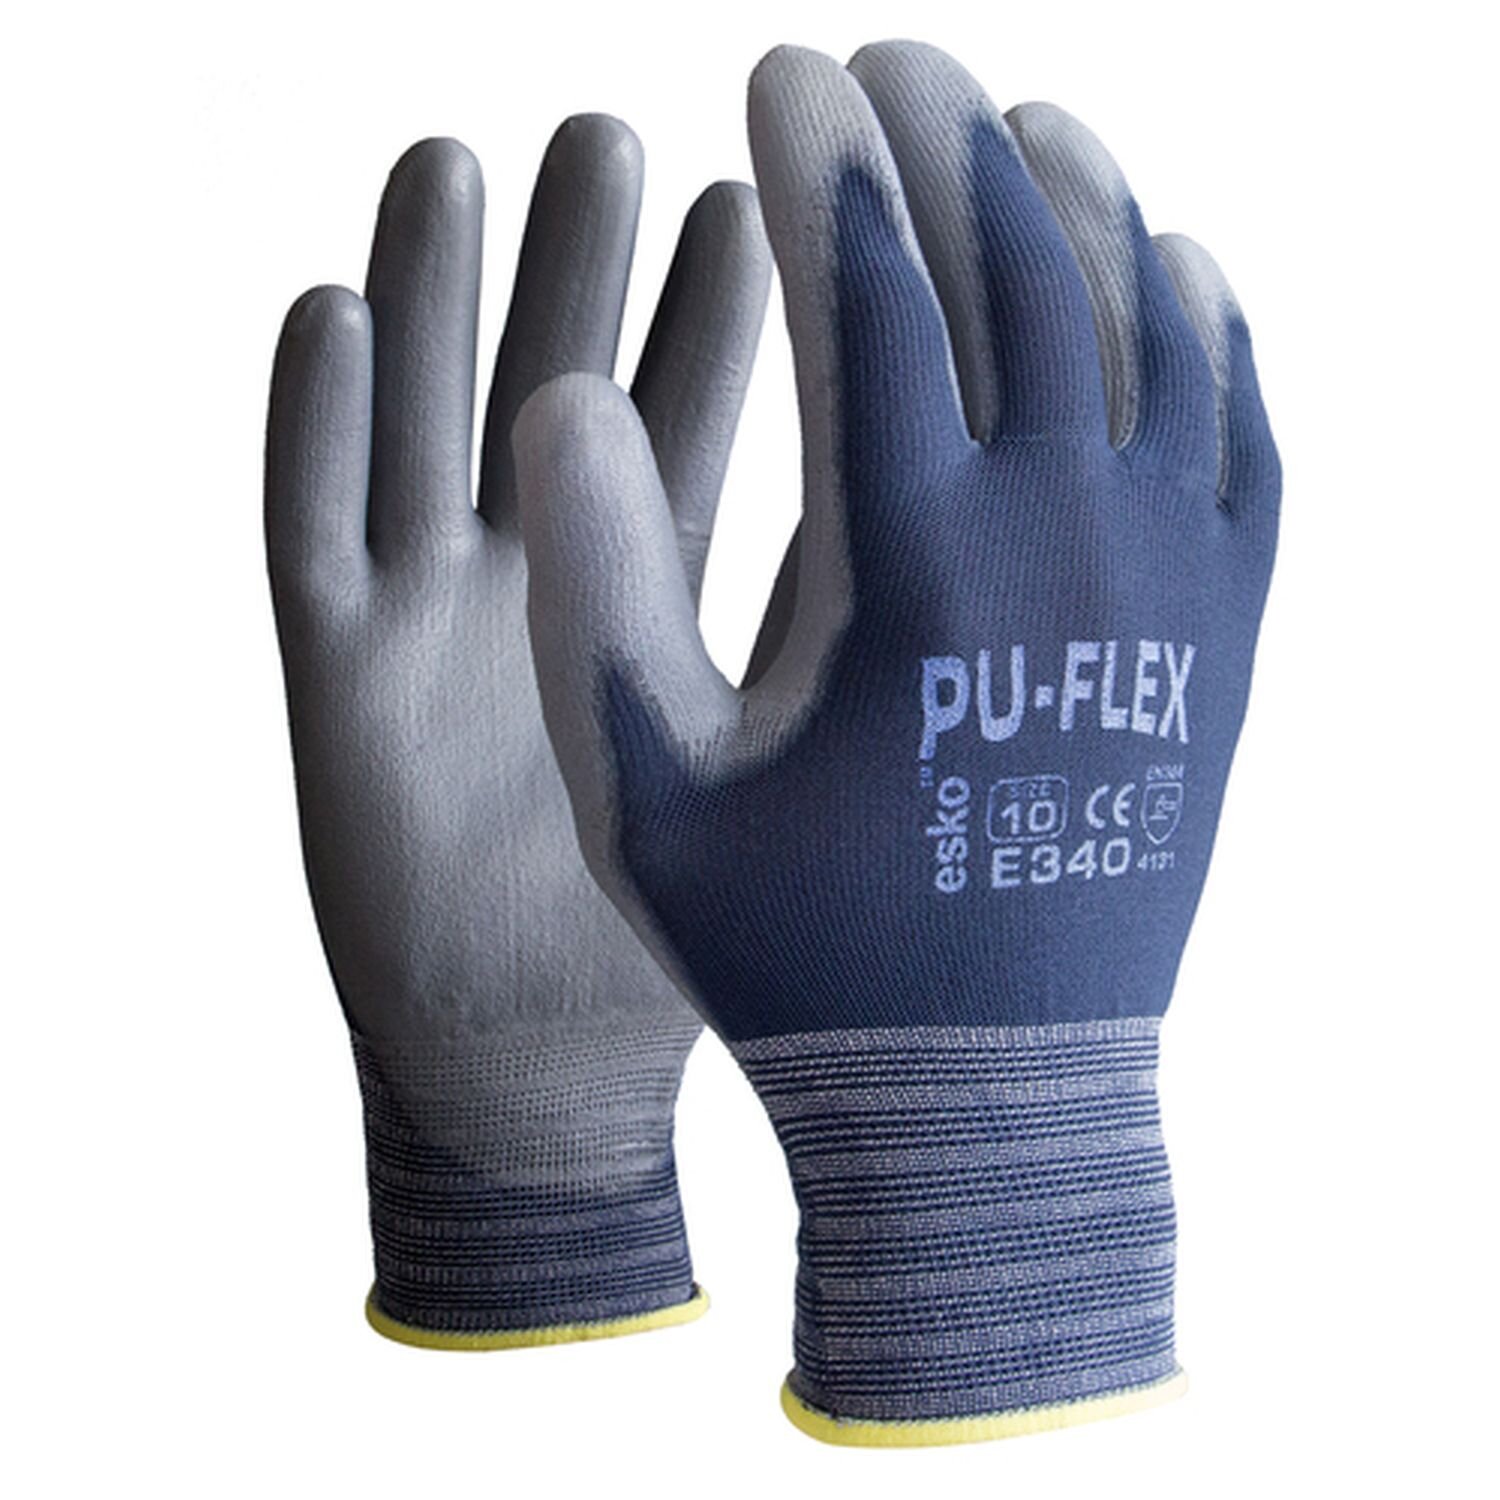 E345 PU-Flex Glove PU Palm Blue/Grey